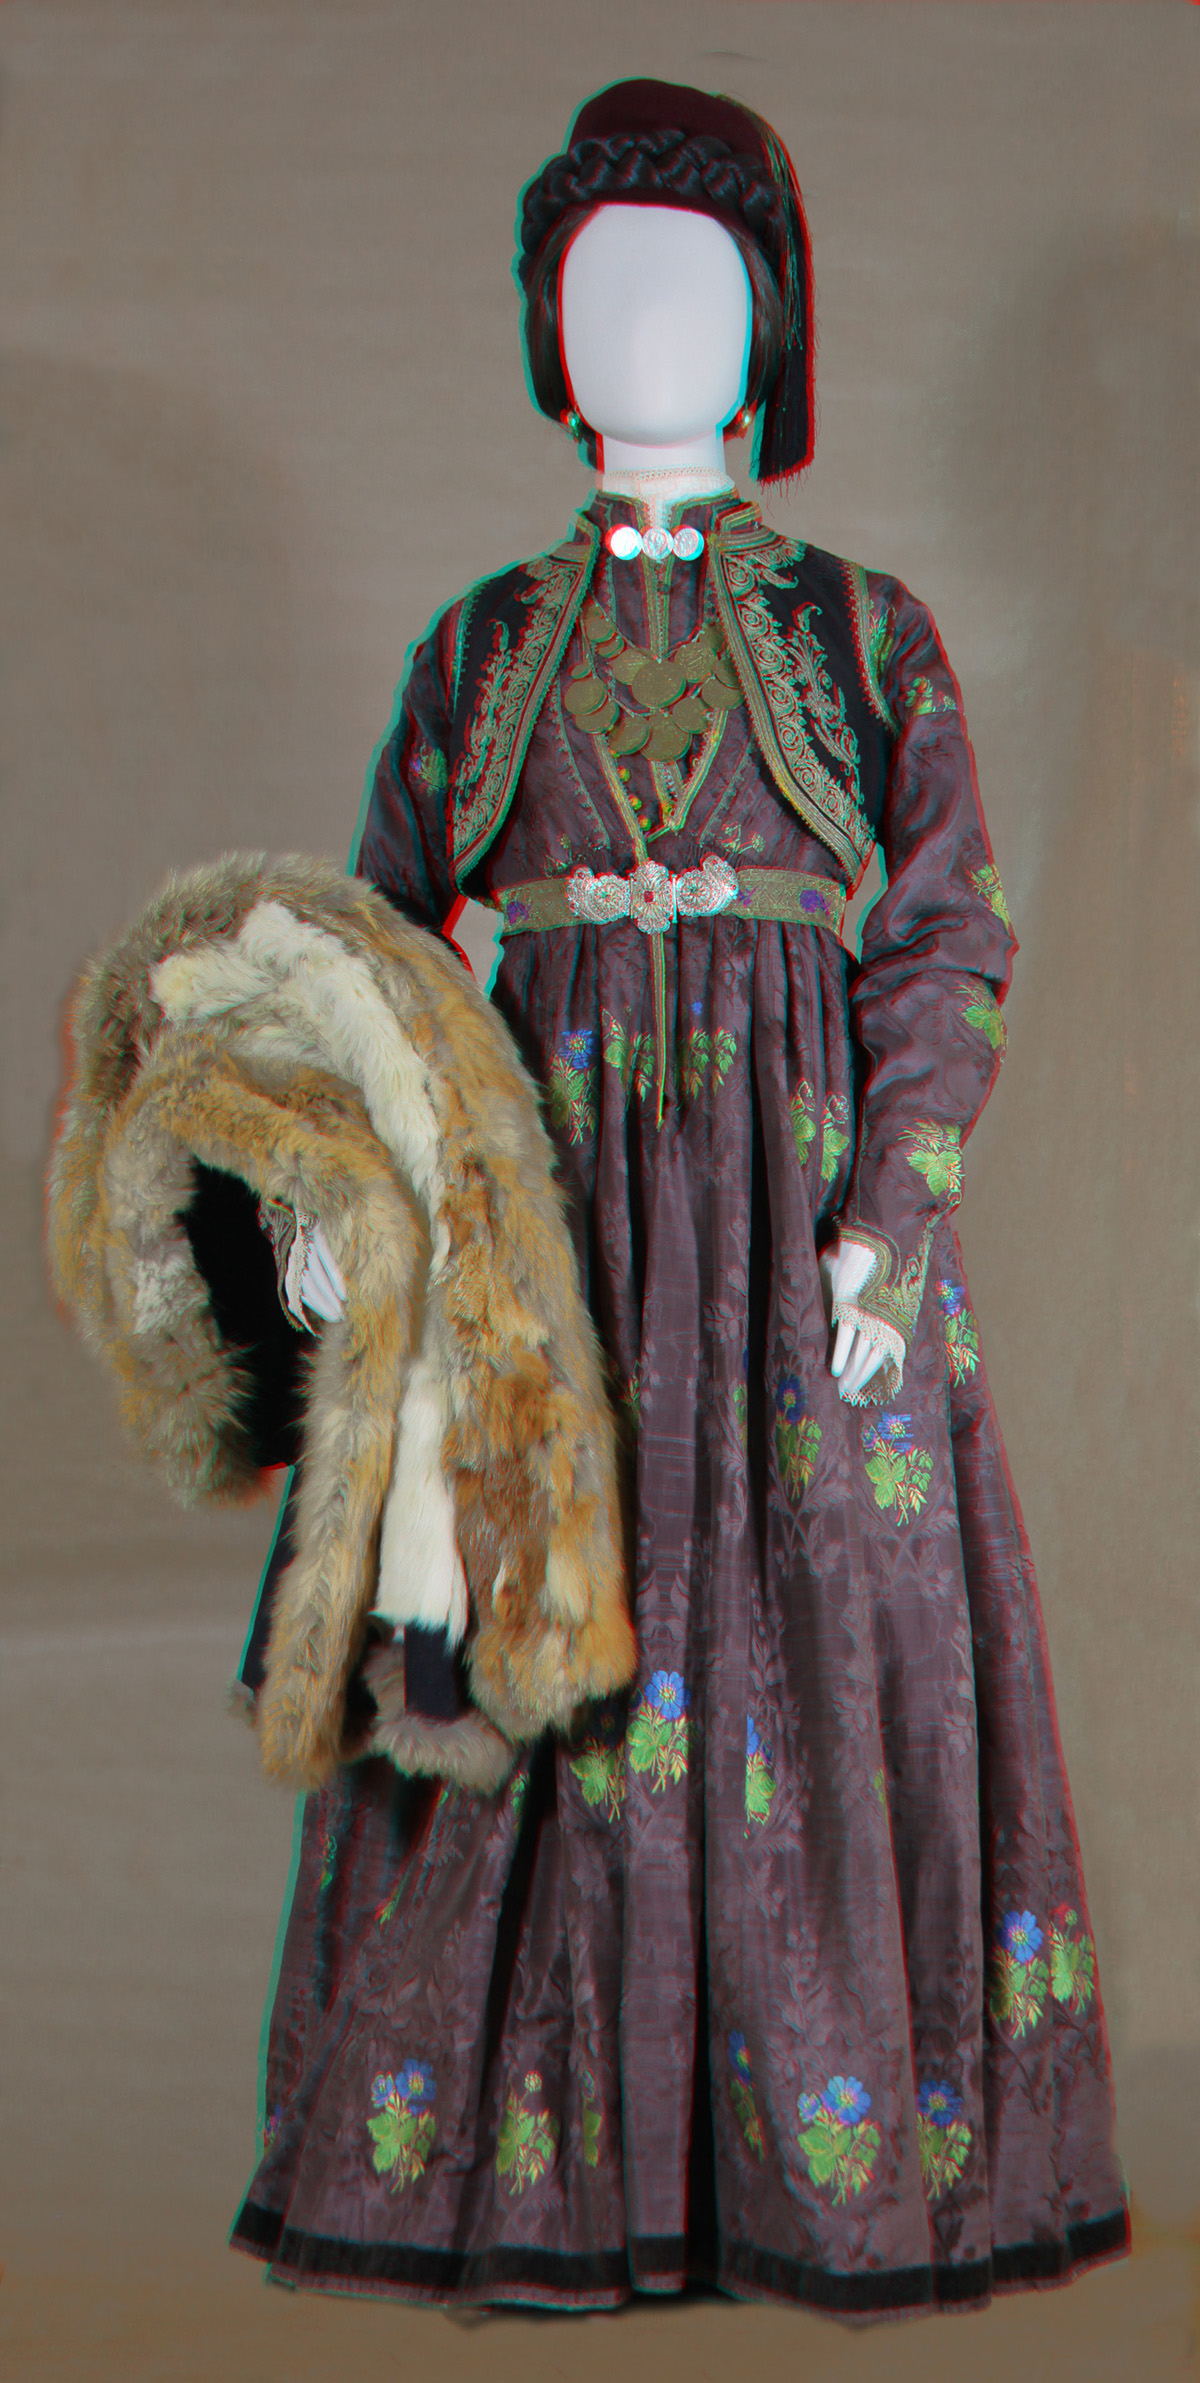 Κούκλα με γυναικεία φορεσιά από Βλάστη Ν. Κοζάνης (από την αίθουσα Δυτικής Μακεδονίας)